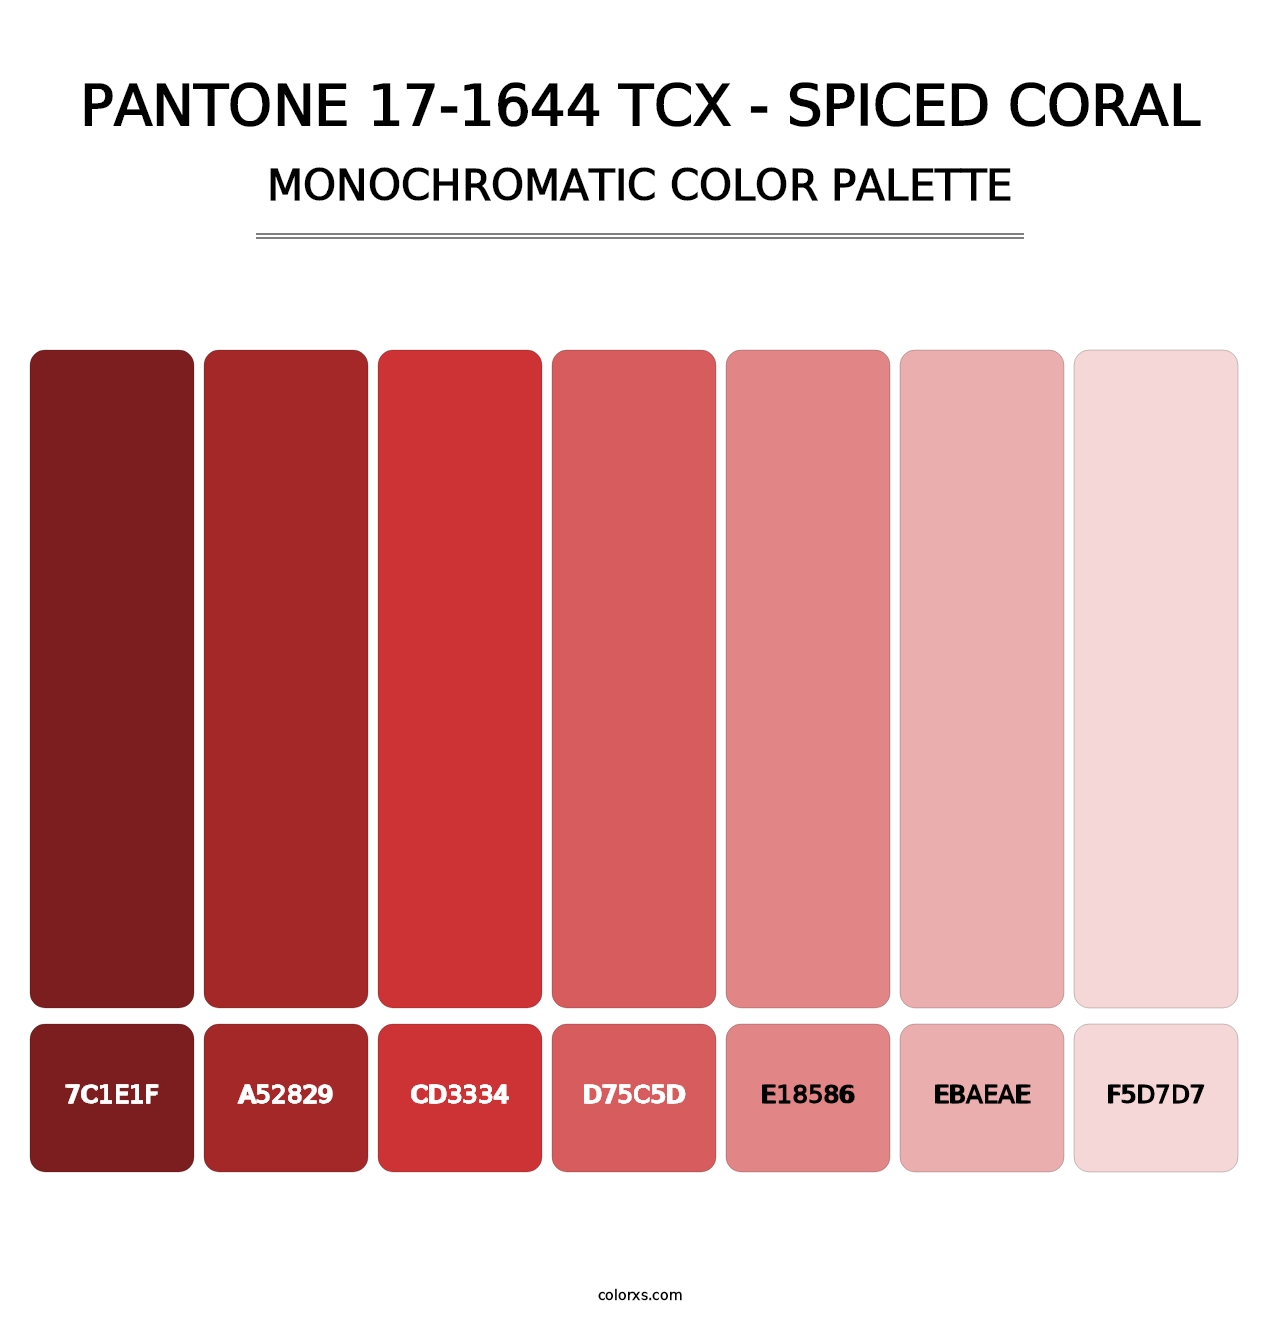 PANTONE 17-1644 TCX - Spiced Coral - Monochromatic Color Palette